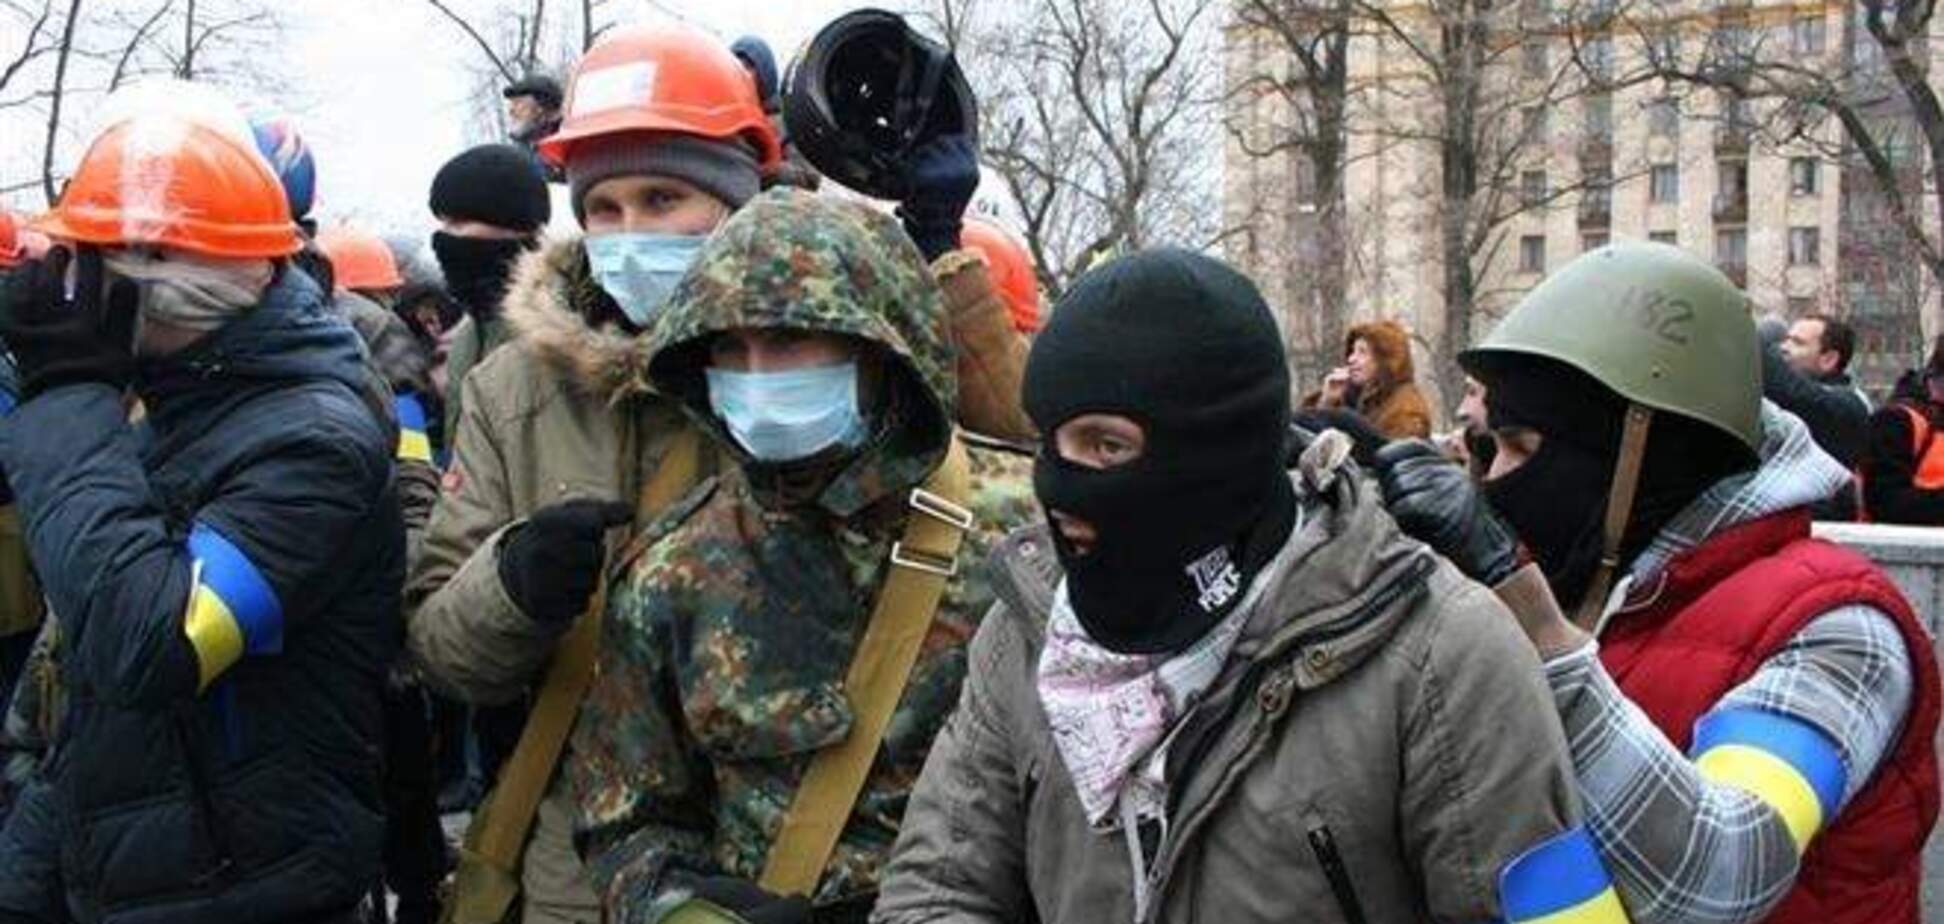 ФСБ при поддержке МВД Украины планирует теракты - 'Правый сектор'